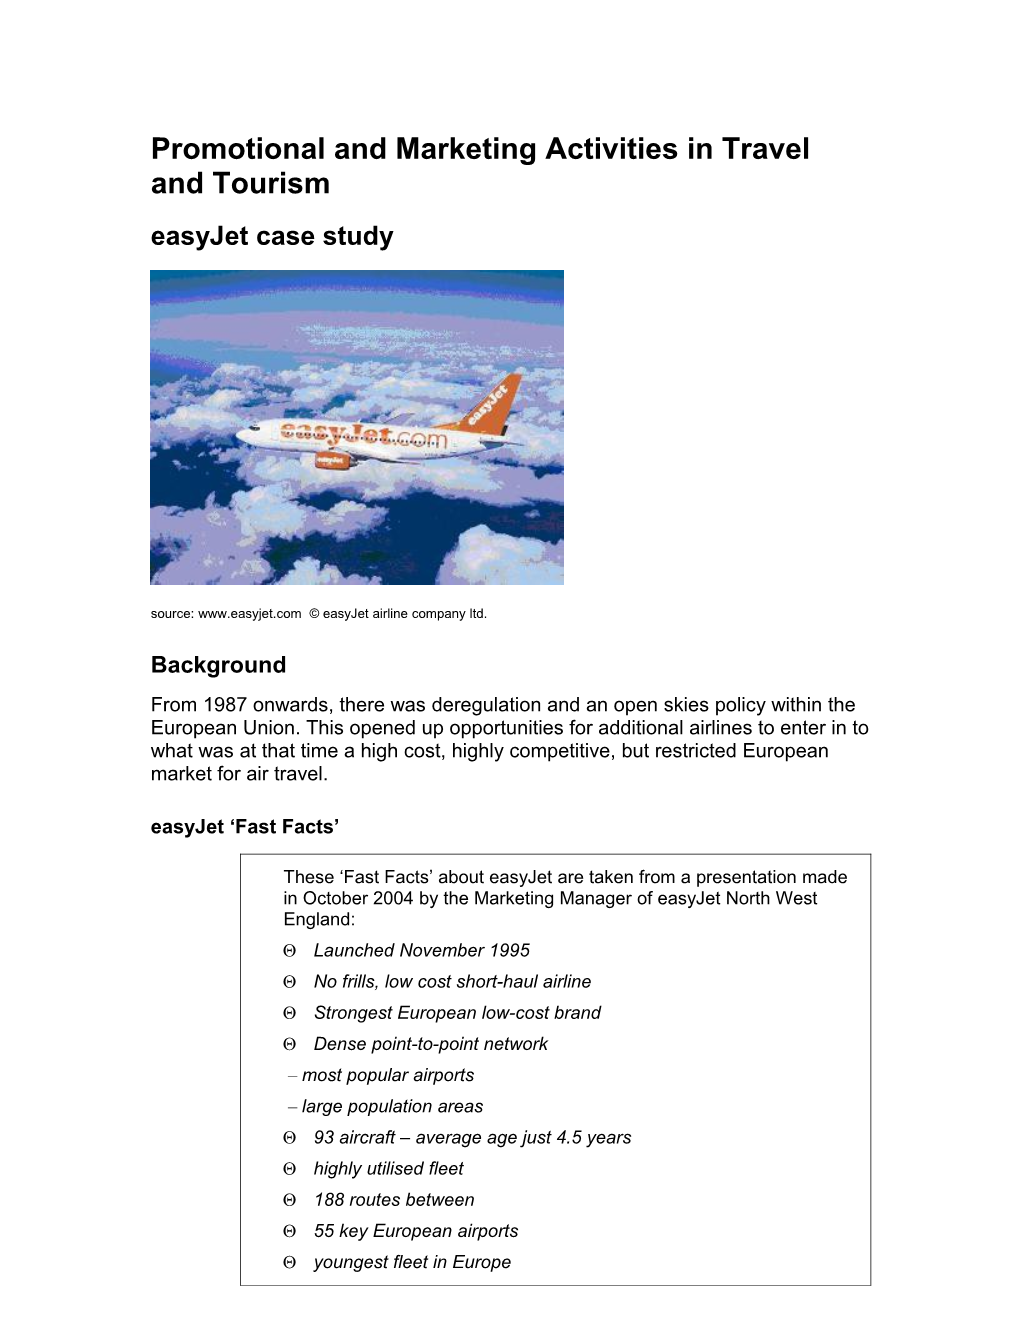 Easyjet Marketing Activities - Case Study